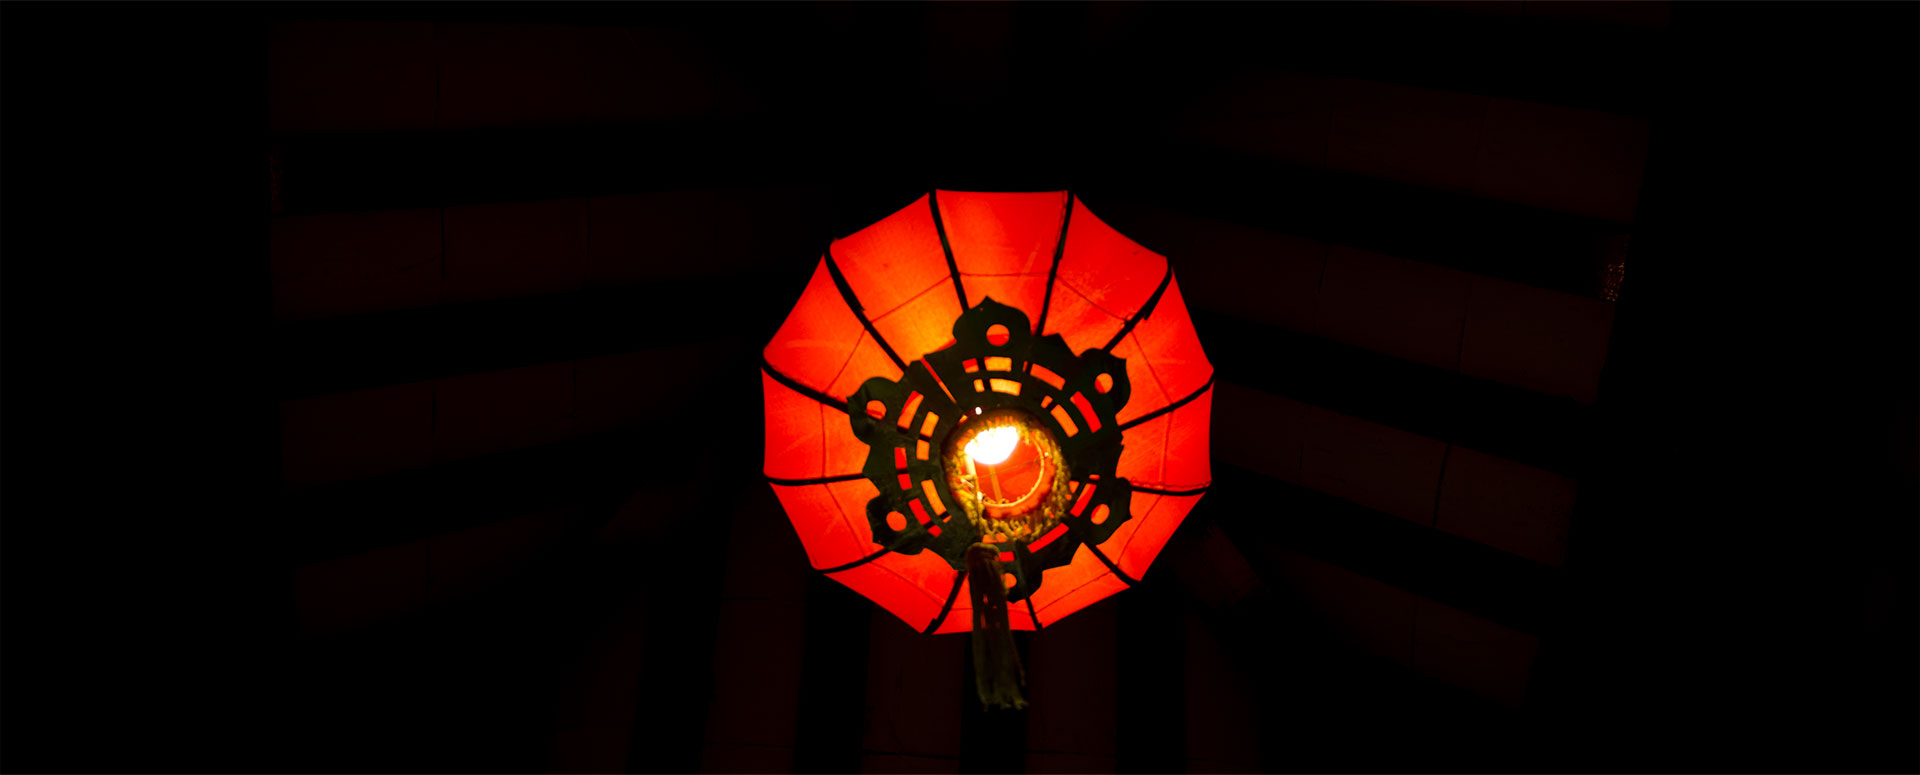 Lantern, Chinese Gardens (2011)